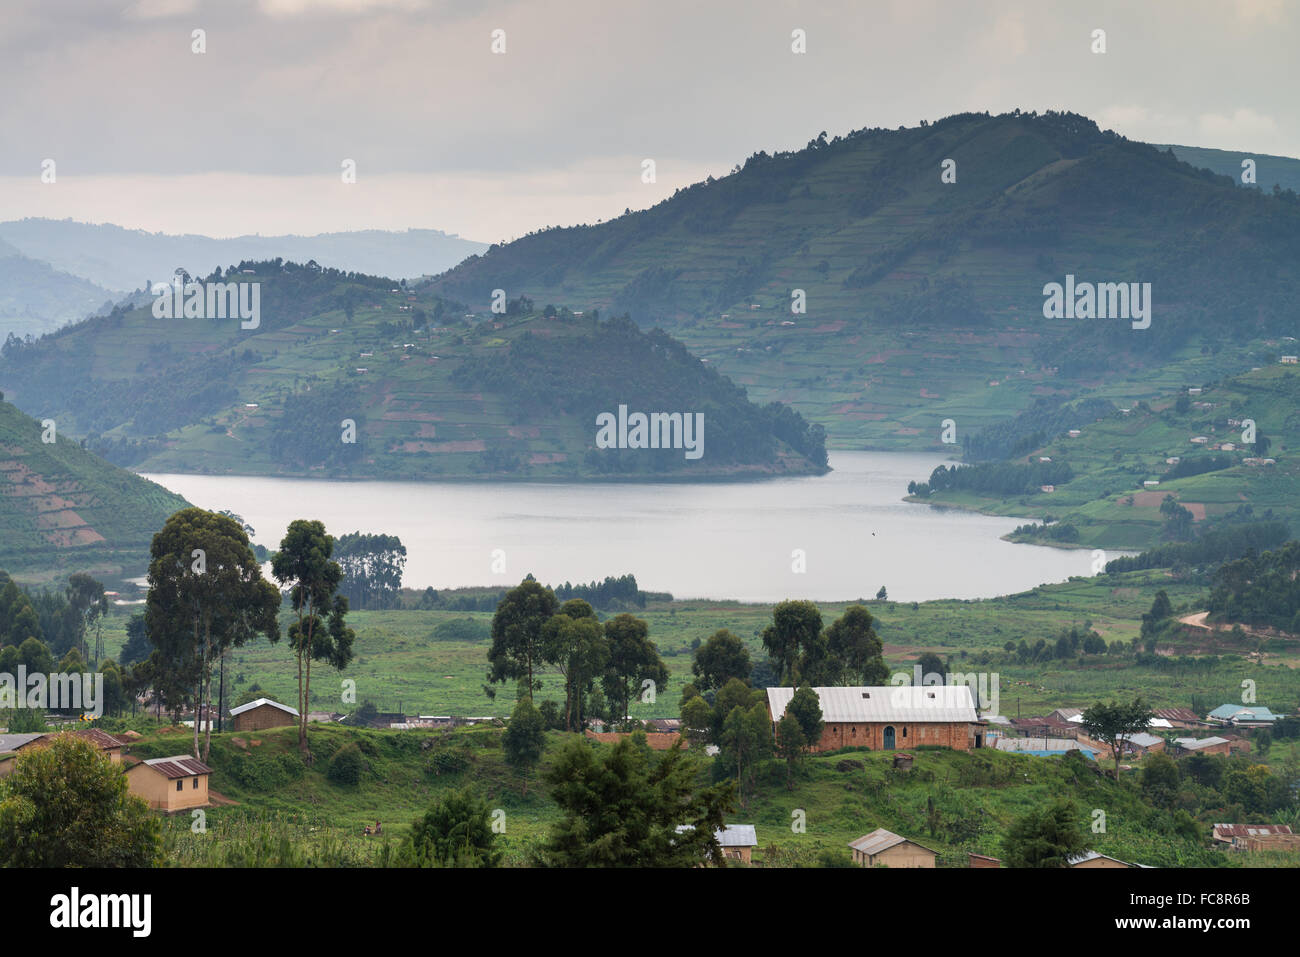 Lake Bunyonyi Landscape, Uganda, Africa Stock Photo